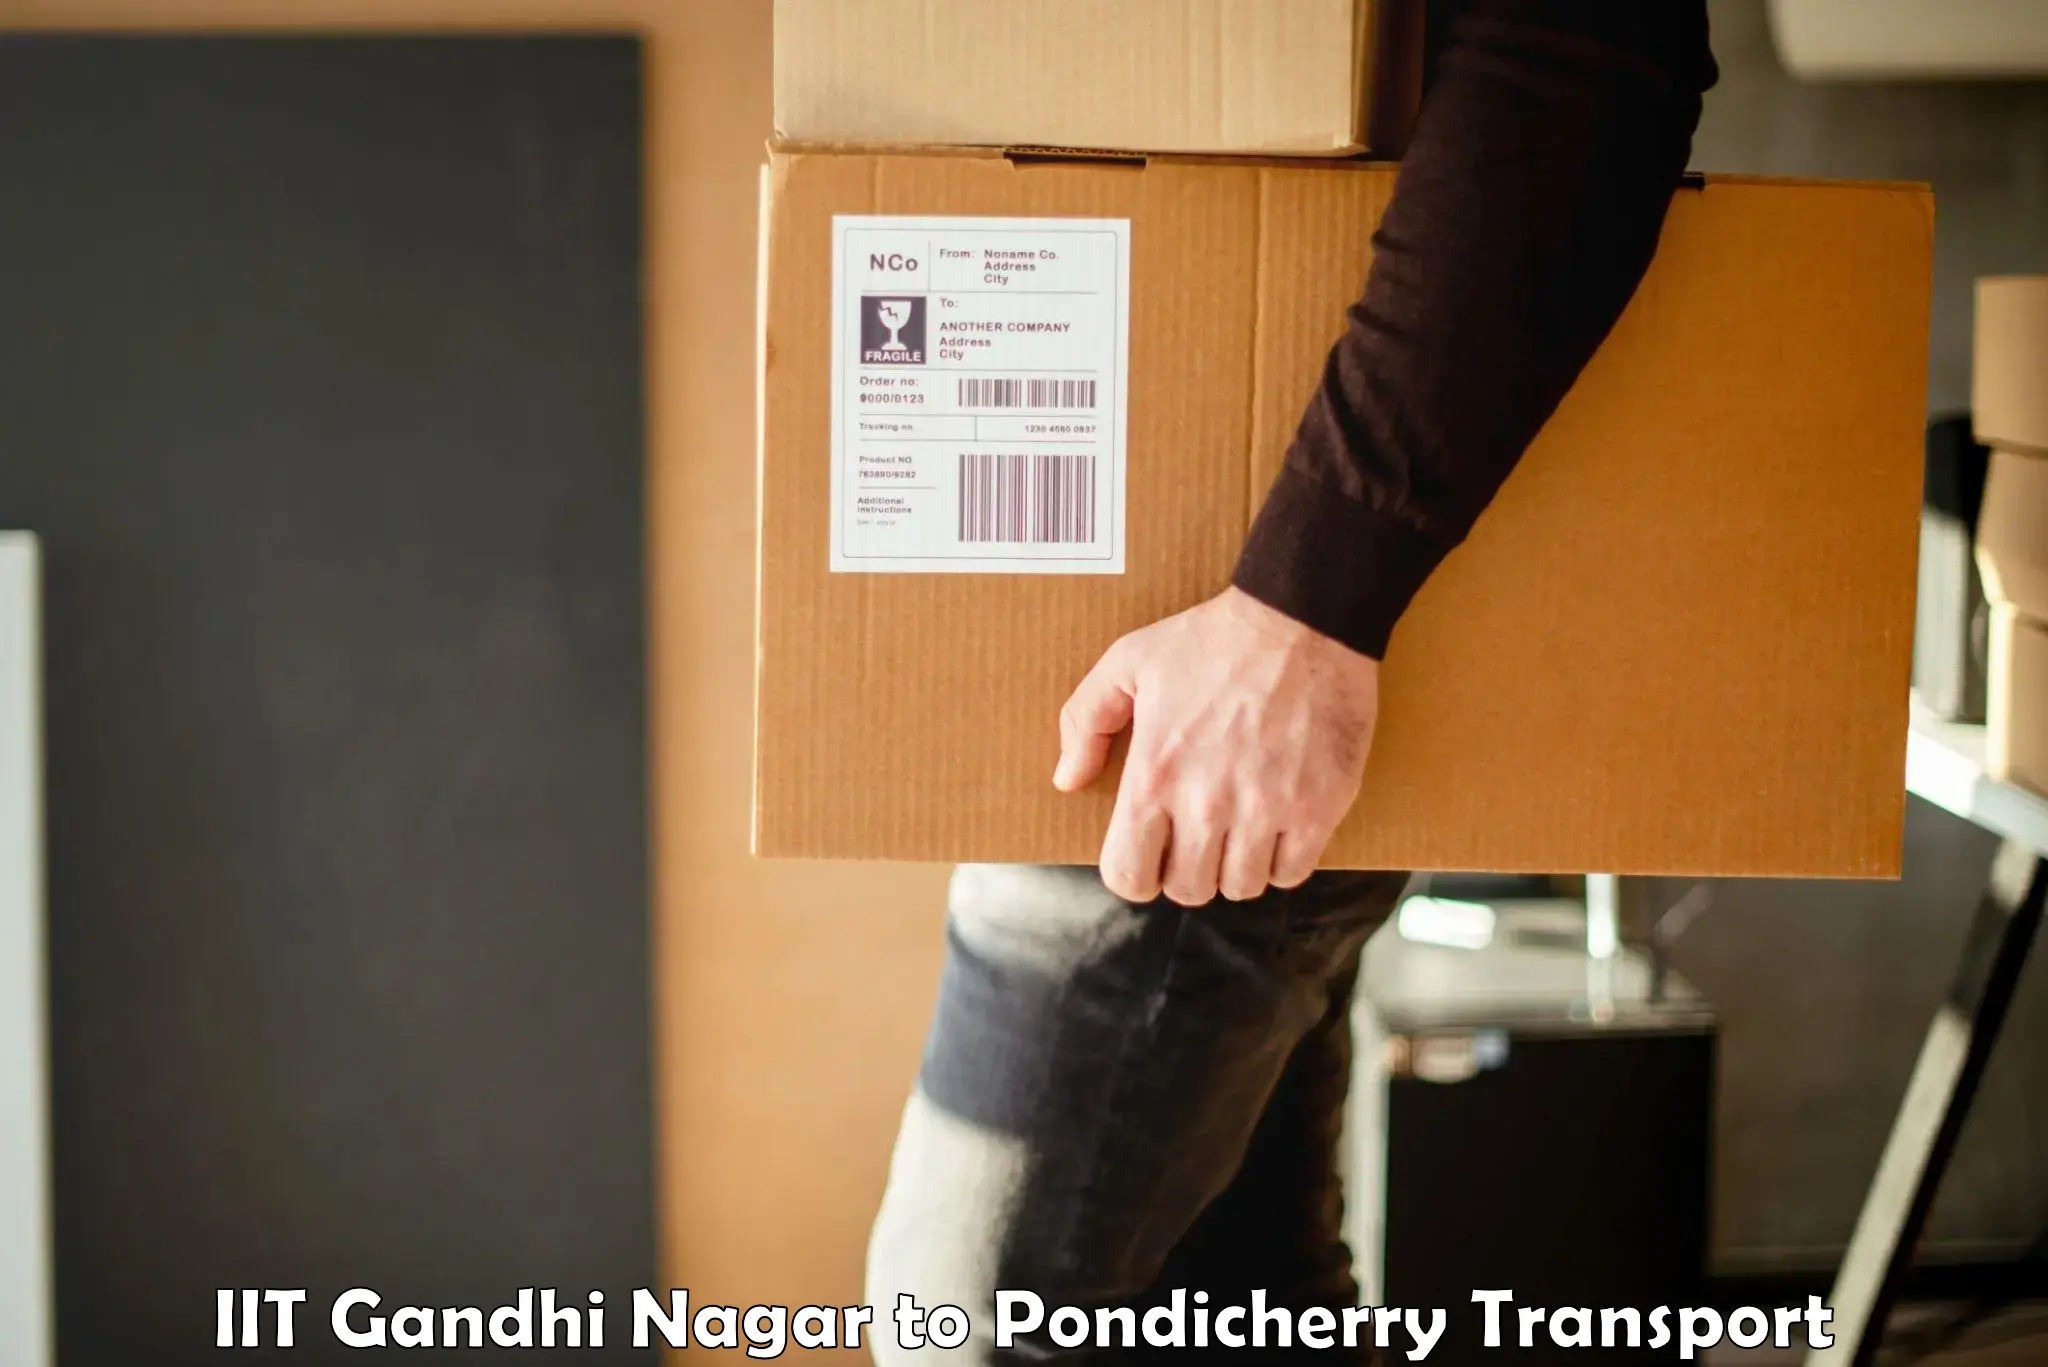 Transport shared services IIT Gandhi Nagar to Pondicherry